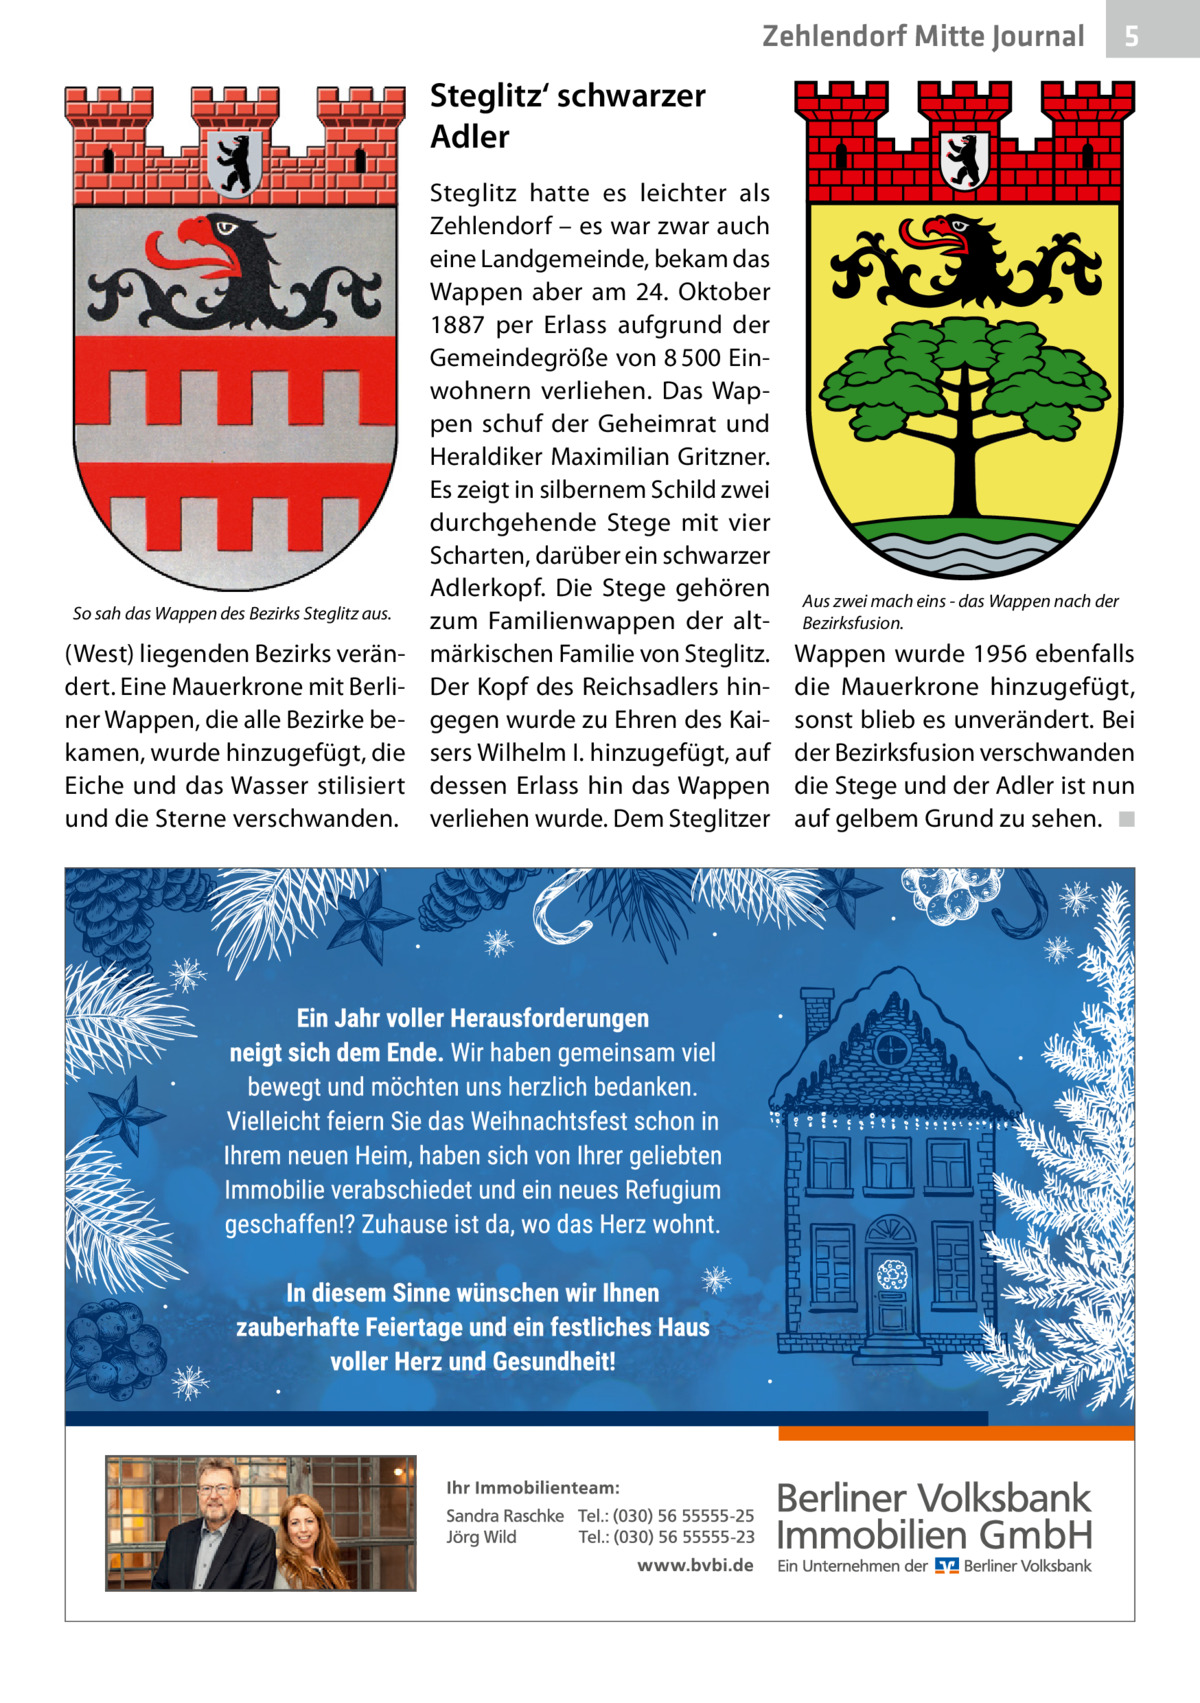 Zehlendorf Mitte Journal  5  Steglitz‘ schwarzer Adler  So sah das Wappen des Bezirks Steglitz aus.  (West) liegenden Bezirks verändert. Eine Mauerkrone mit Berliner Wappen, die alle Bezirke bekamen, wurde hinzugefügt, die Eiche und das Wasser stilisiert und die Sterne verschwanden.  Steglitz hatte es leichter als Zehlendorf – es war zwar auch eine Landgemeinde, bekam das Wappen aber am 24.  Oktober 1887 per Erlass aufgrund der Gemeindegröße von 8 500 Einwohnern verliehen. Das Wappen schuf der Geheimrat und Heraldiker Maximilian Gritzner. Es zeigt in silbernem Schild zwei durchgehende Stege mit vier Scharten, darüber ein schwarzer Adlerkopf. Die Stege gehören zum Familienwappen der altmärkischen Familie von Steglitz. Der Kopf des Reichsadlers hingegen wurde zu Ehren des Kaisers Wilhelm I. hinzugefügt, auf dessen Erlass hin das Wappen verliehen wurde. Dem Steglitzer  Aus zwei mach eins - das Wappen nach der Bezirksfusion.  Wappen wurde 1956 ebenfalls die Mauerkrone hinzugefügt, sonst blieb es unverändert. Bei der Bezirksfusion verschwanden die Stege und der Adler ist nun auf gelbem Grund zu sehen. ◾